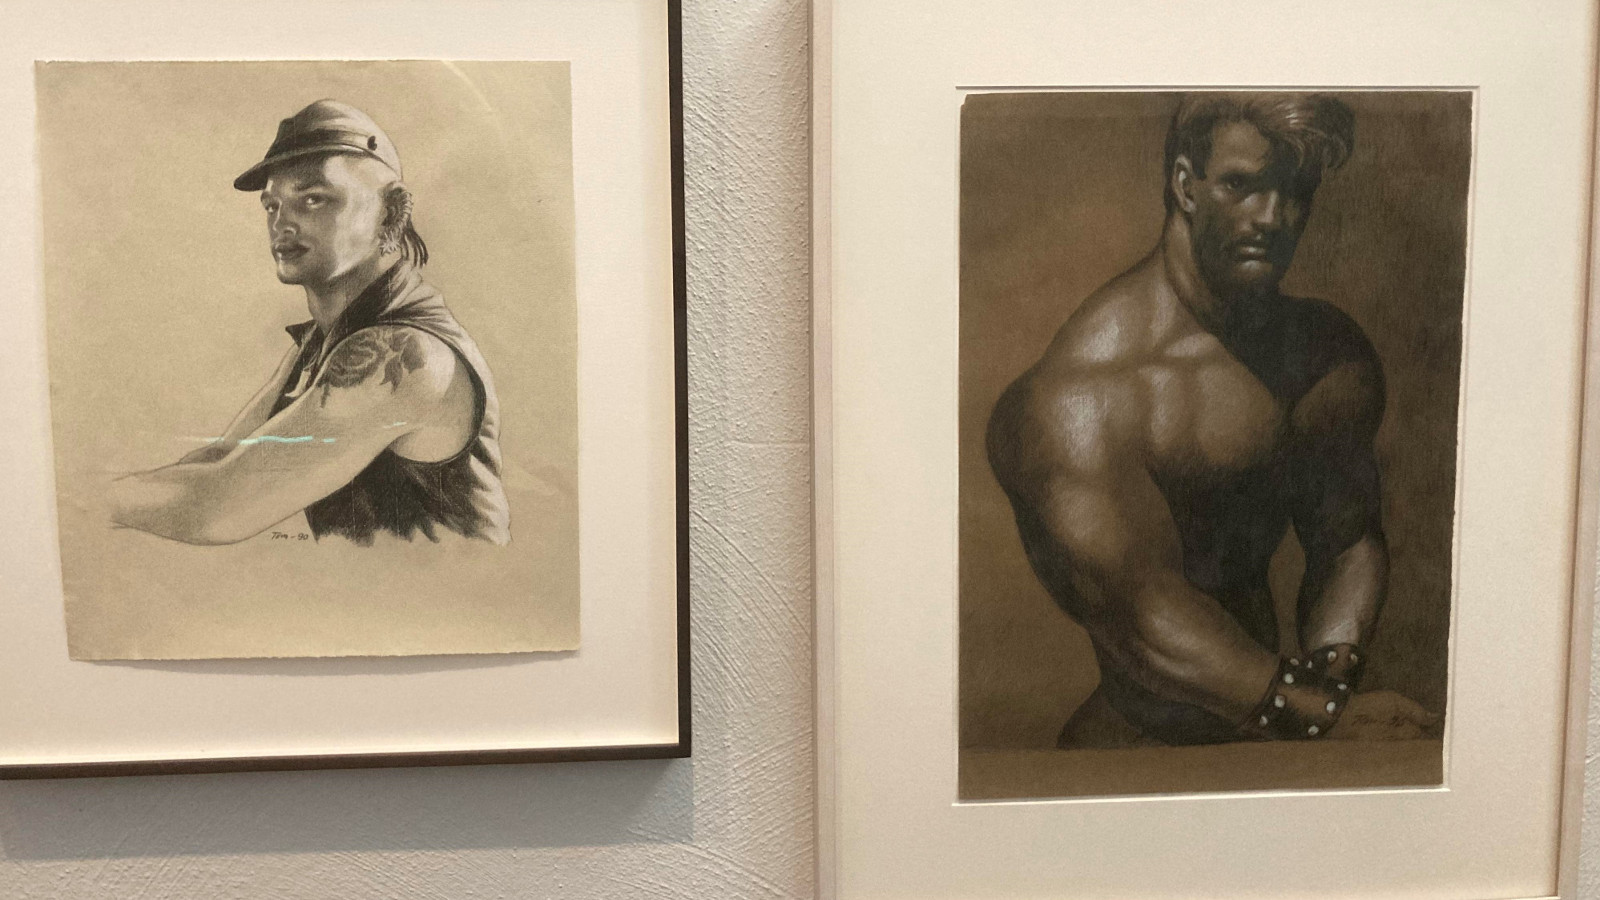 Kuvassa on kaksi taulua, joista vasemman puoleisessa on nuoren miehen kuva, jolla on lippalakki ja musta liivi sekä ruusutatuointi vasemmassa olkapäässään. Kädet eivät näy kokonaan. Oikean puoleisessä taulussa on tummasävyinen puolivartalokuva miehestä.  Hänen ylävartalonsa on paljas.